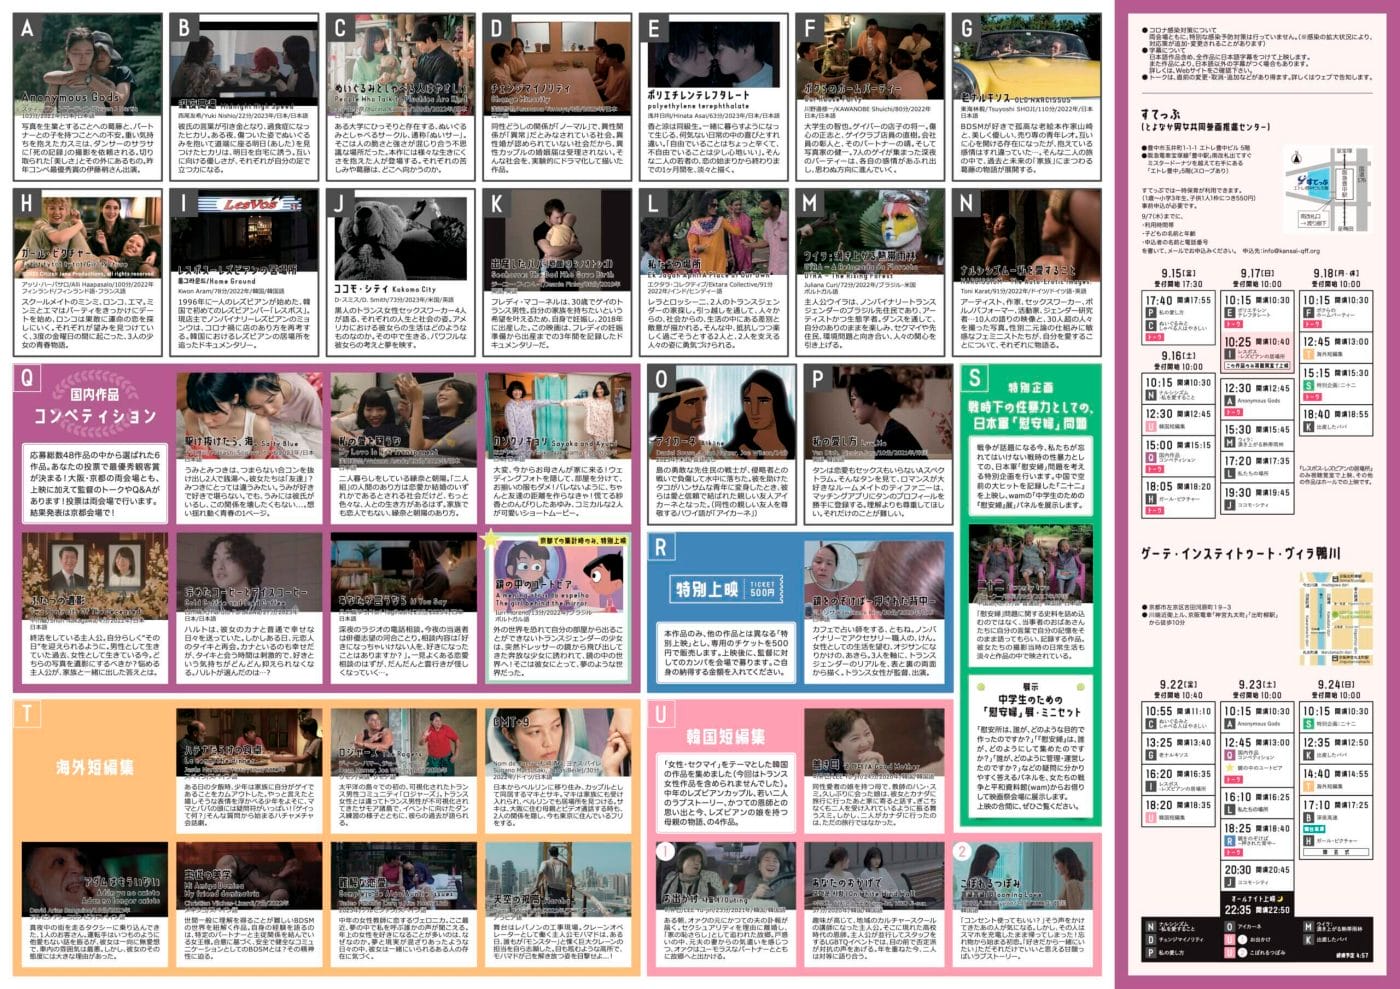 性をテーマにした映像作品を世界中から集めて紹介する「第16回関西クィア映画祭2023」開催。16カ国から36作品を上映。